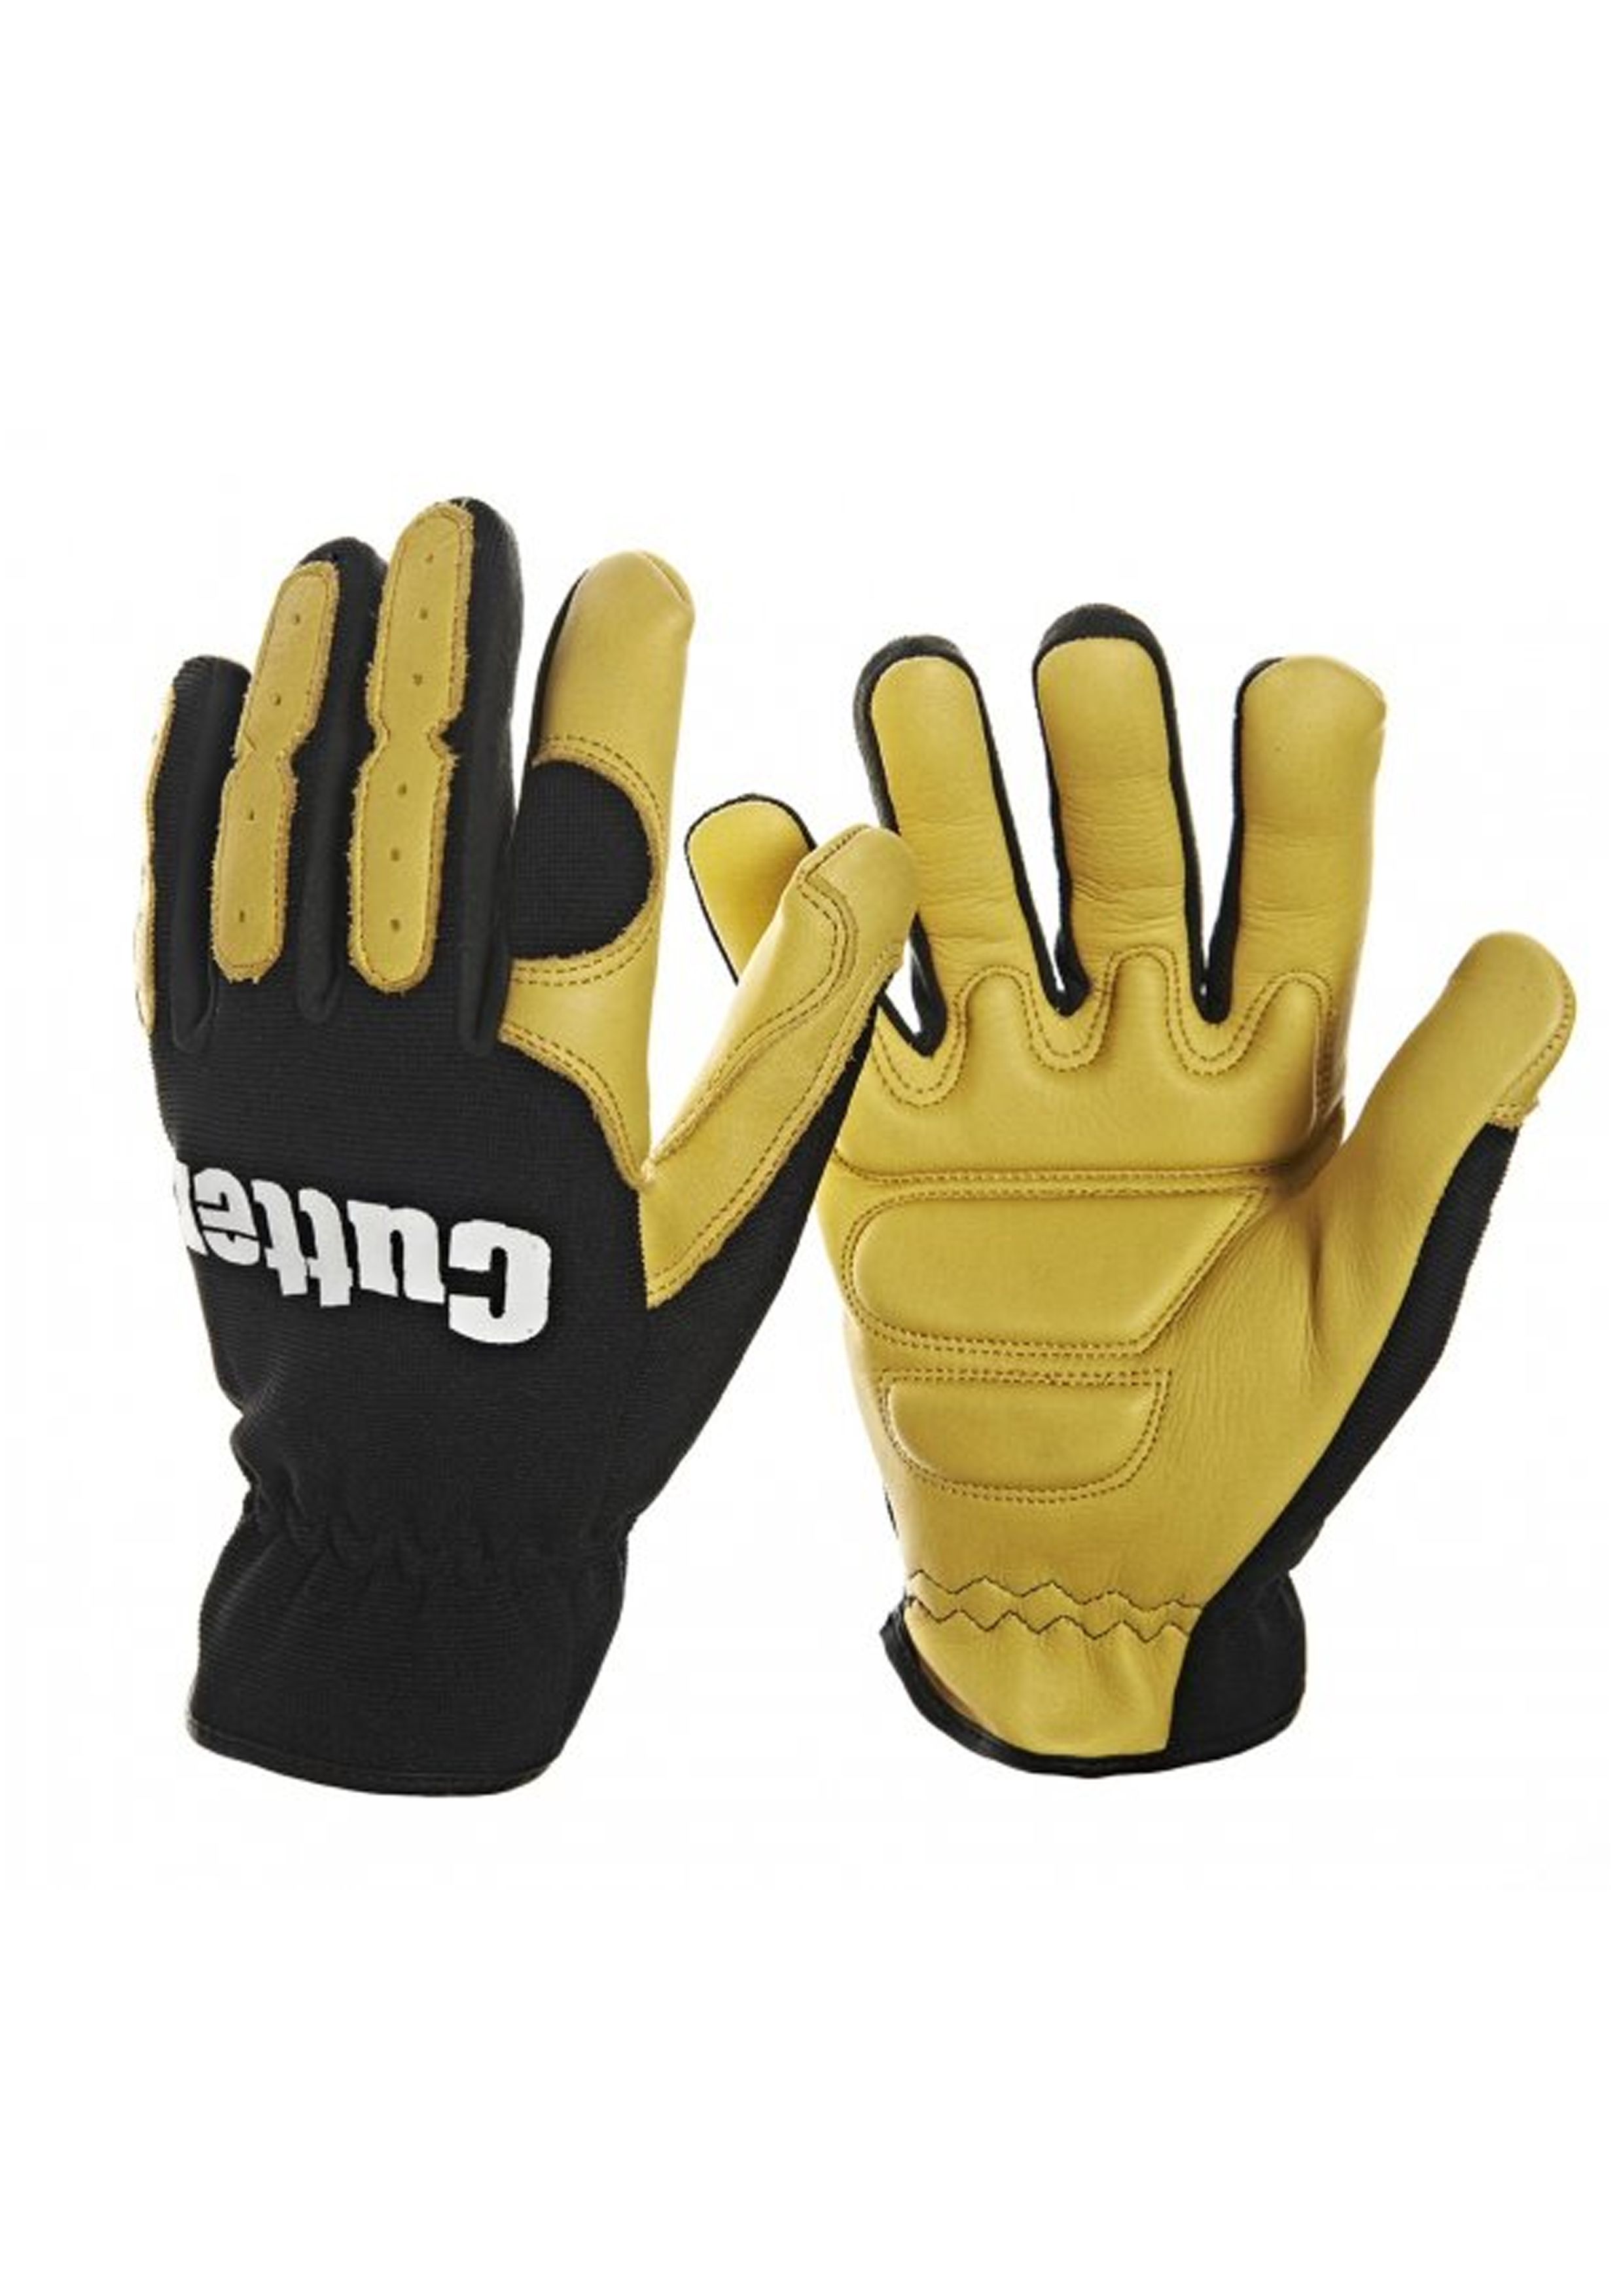 Striimer & Trimmer Glove Ex Large